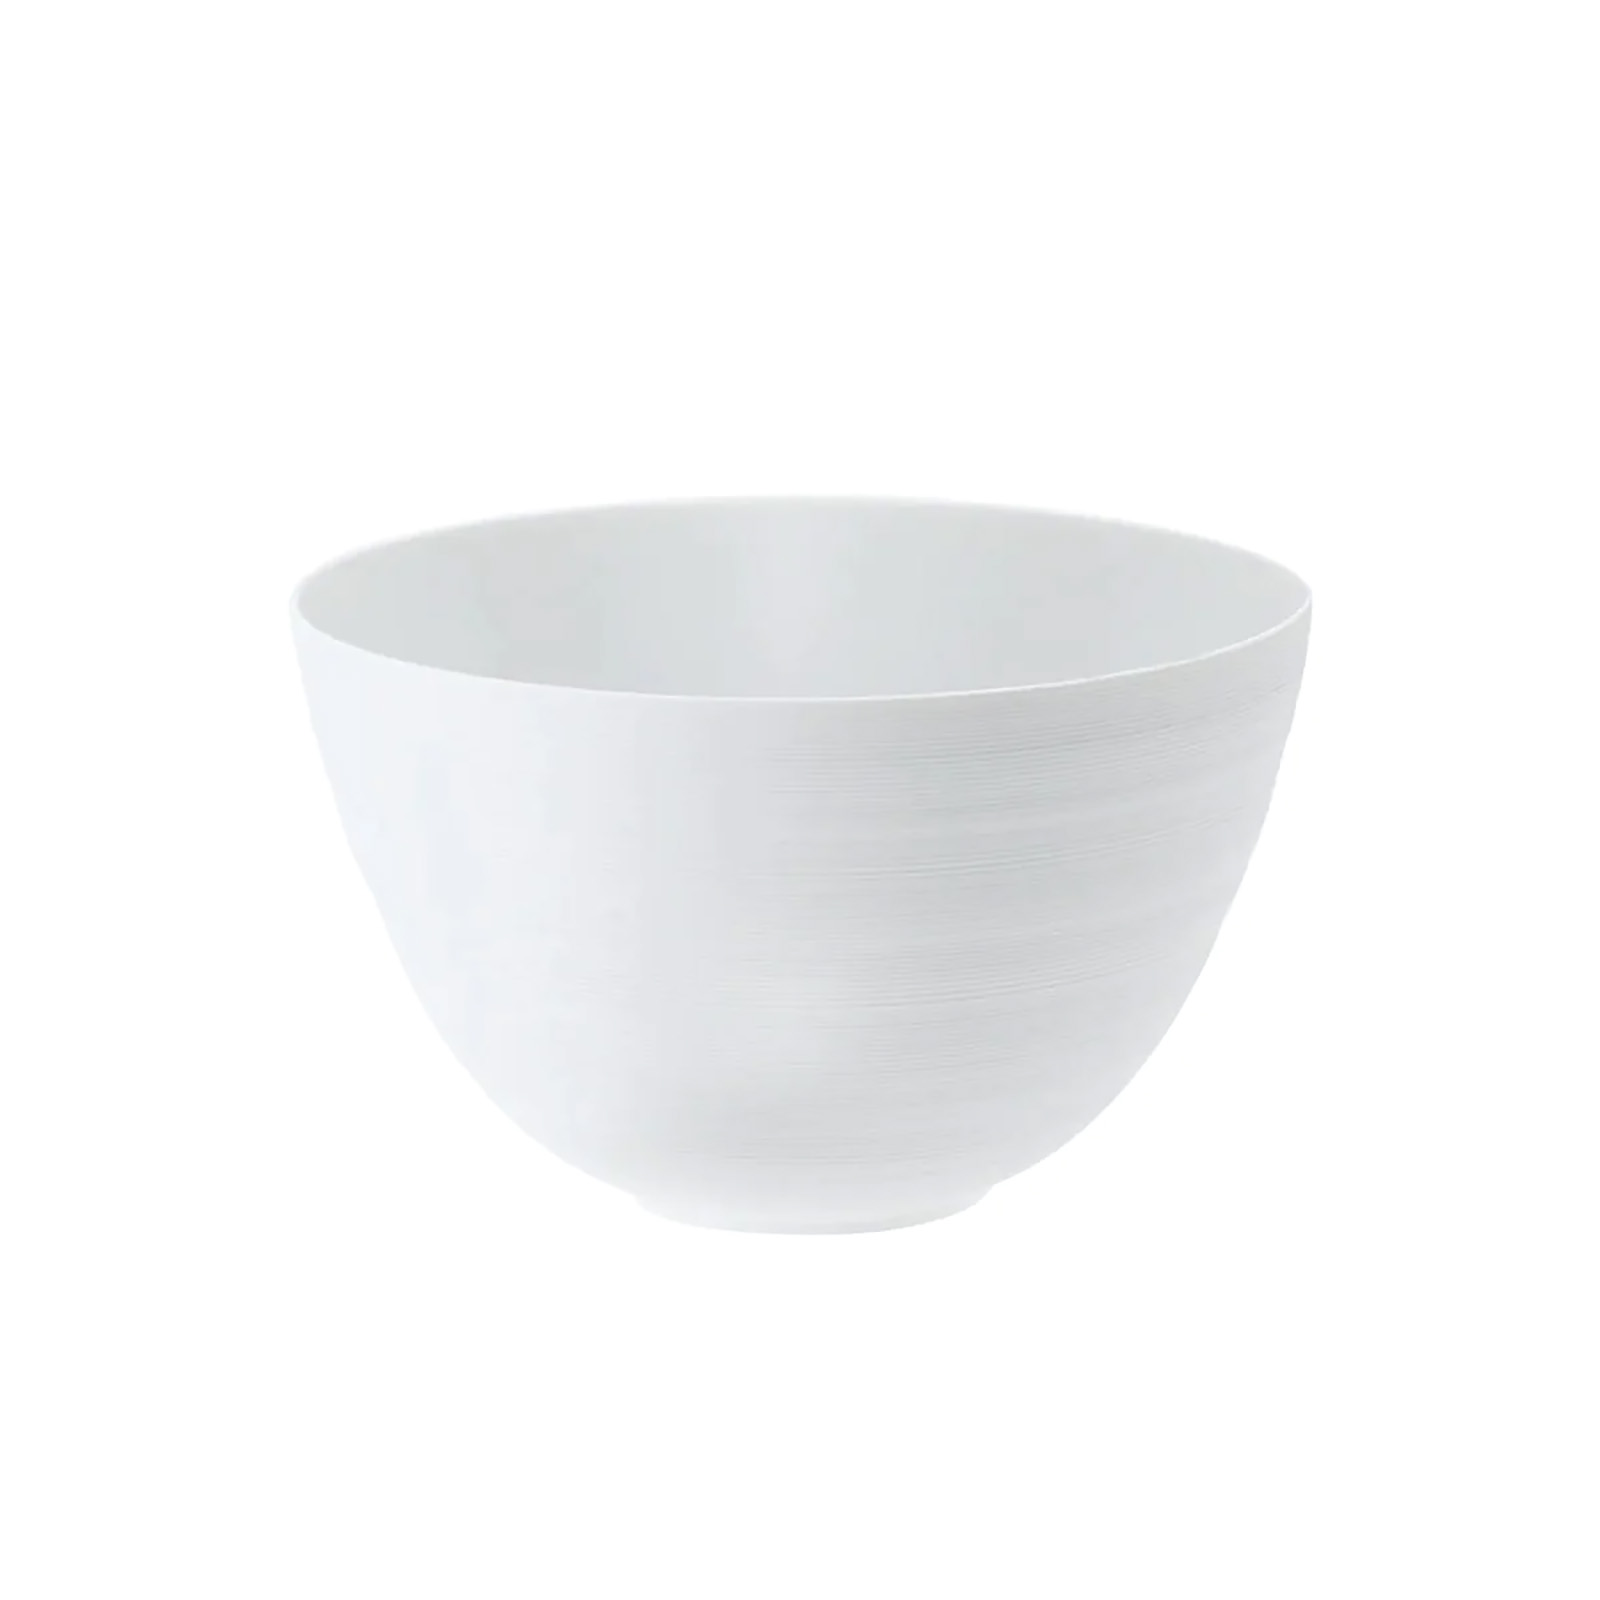 Coquet Hémisphère Salad/Serving Bowl 21,5cm  Satin white Medium